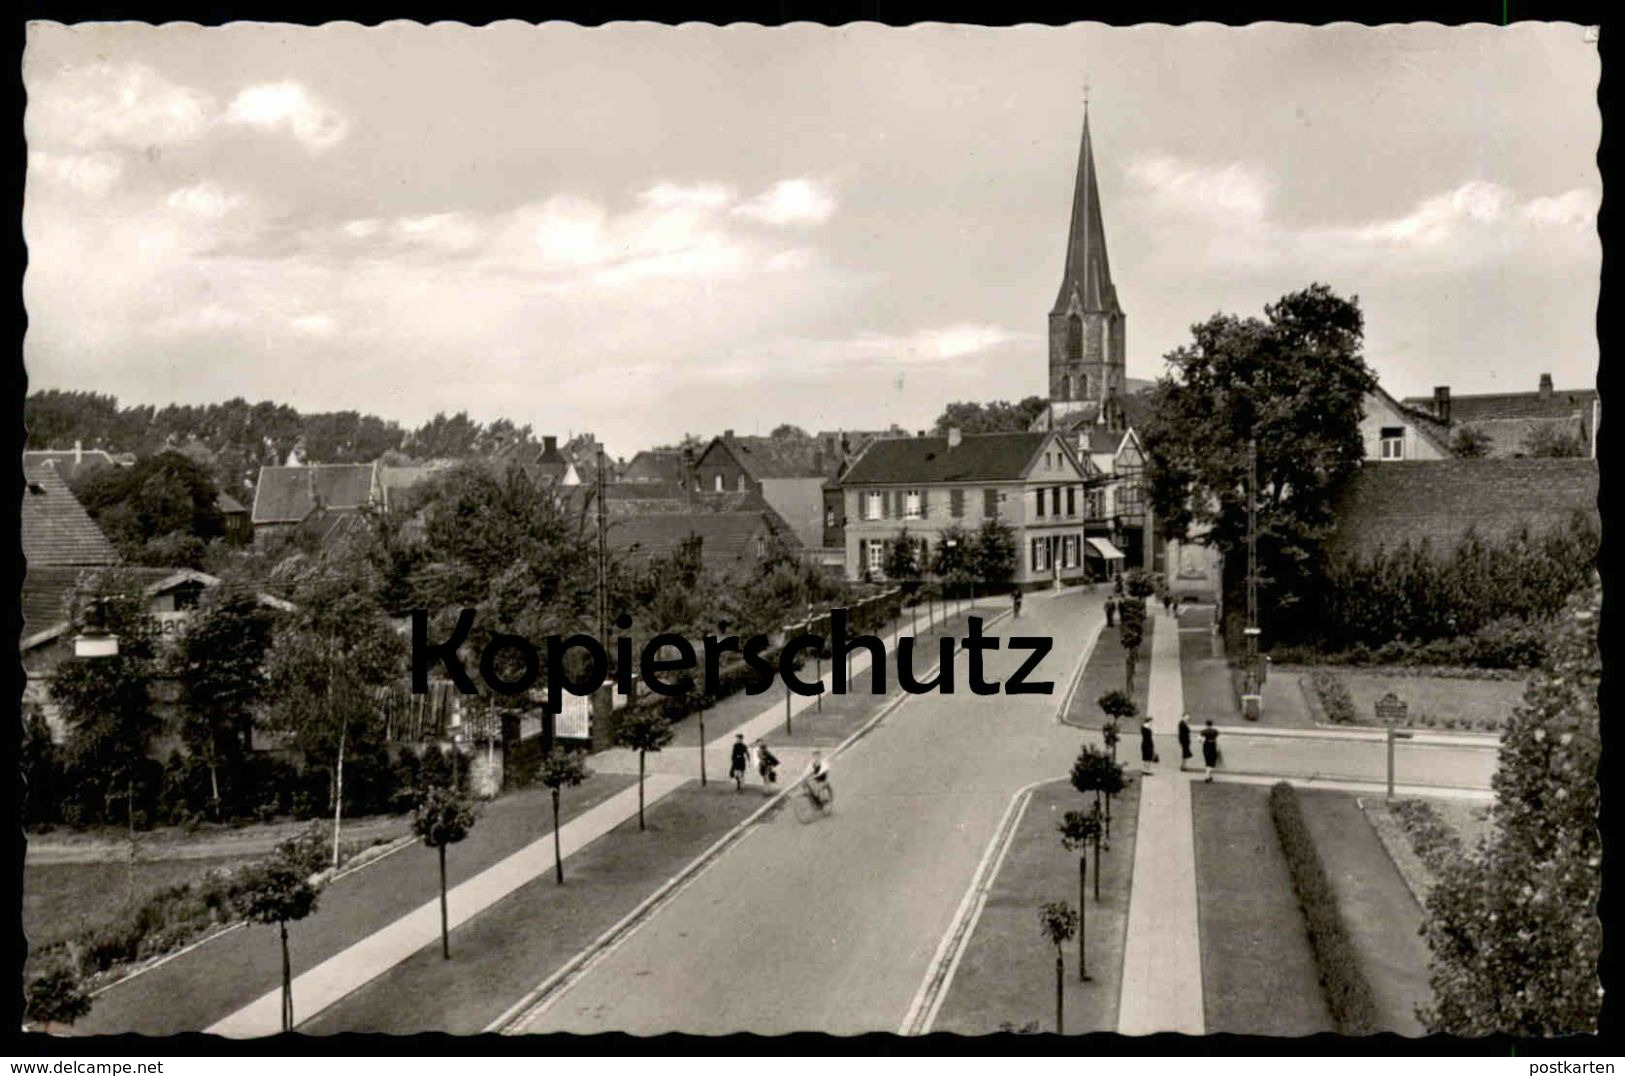 ÄLTERE POSTKARTE WERNE AN DER LIPPE STEINSTRASSE & KIRCHE Bahnpost Münster Dortmund 1956 Cpa Postcard Ansichtskarte AK - Werne